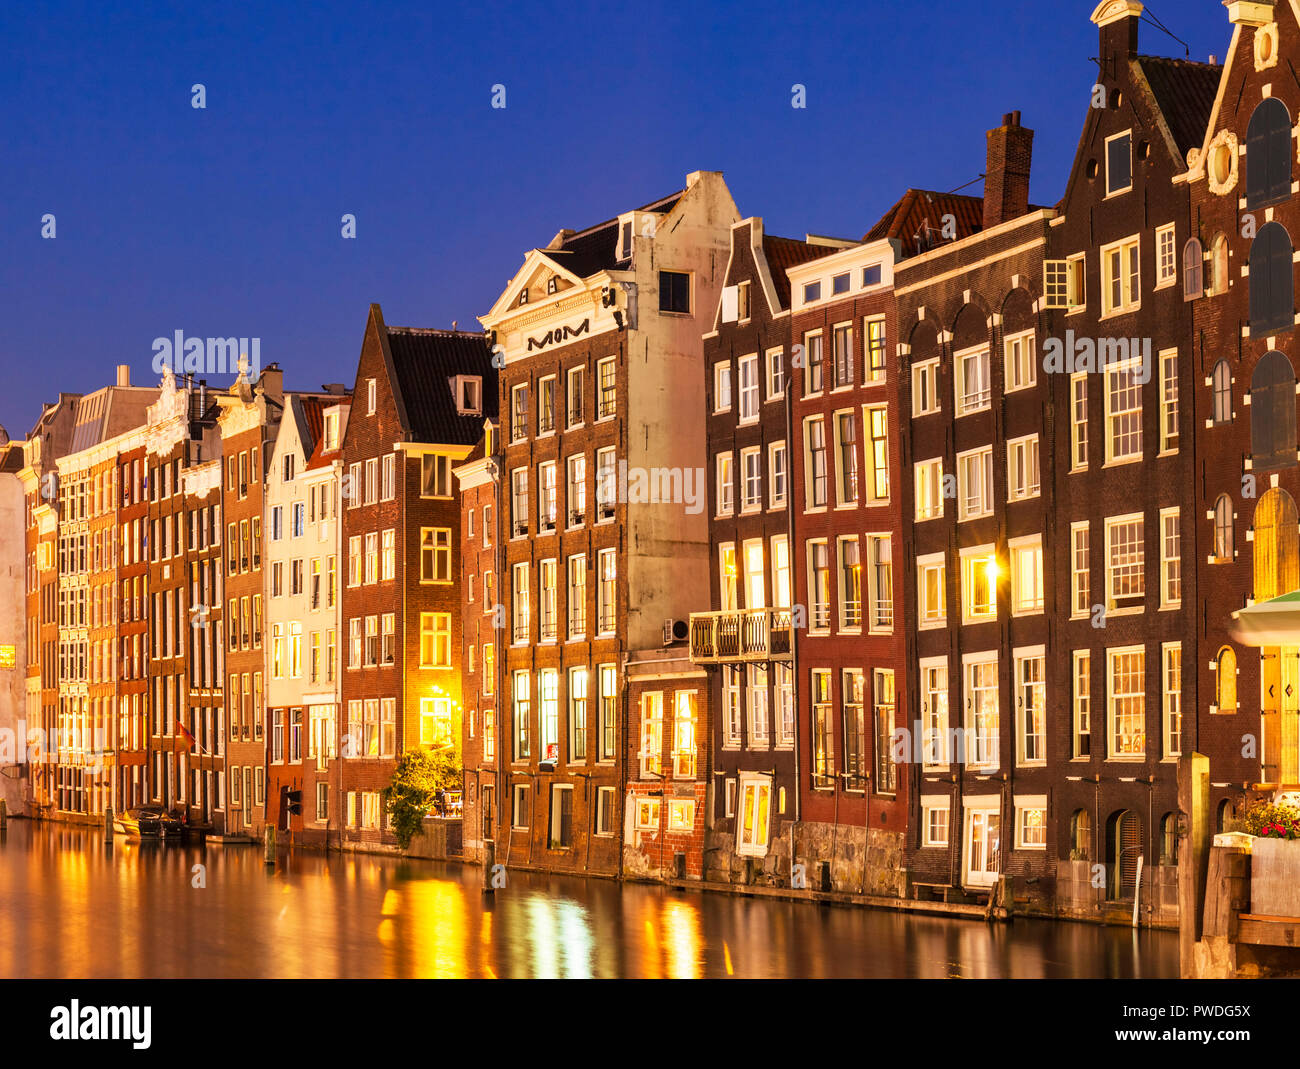 Amsterdam Häuser in der Damrak beleuchtet bei Nacht Häuser mit holländische Architektur beleuchtet durch den Kanal Amsterdam Holland EU Europa Stockfoto